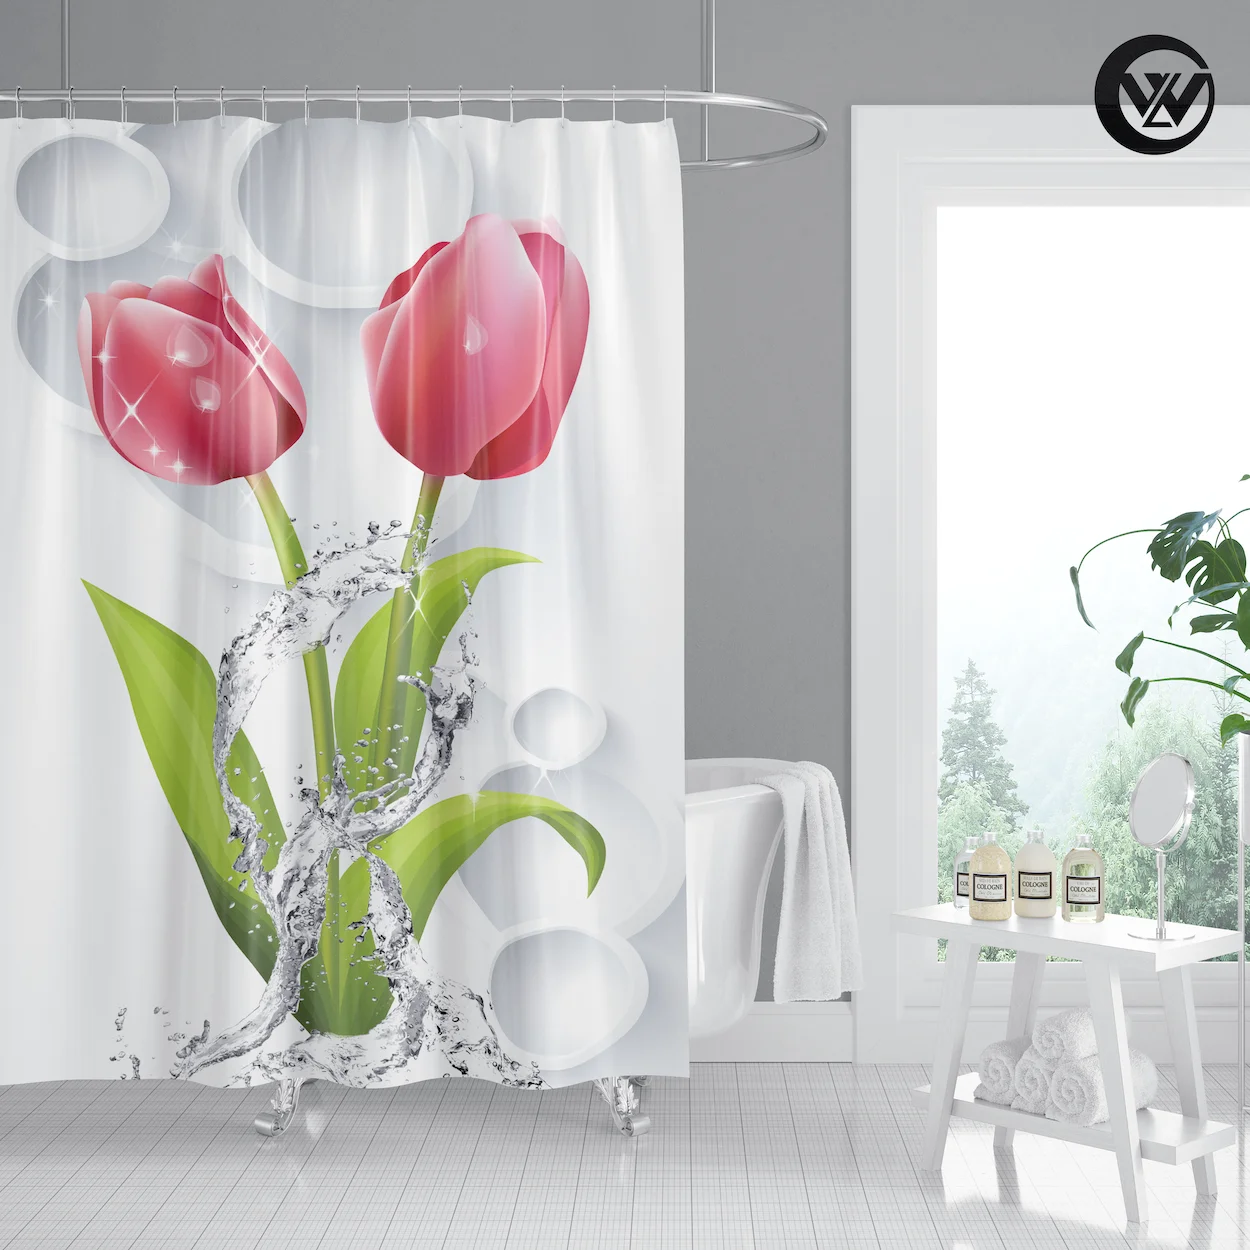 

2020 г., водонепроницаемая тканевая занавеска для ванной и душа с принтом красных тюльпанов, модные белые шторы для ванной комнаты